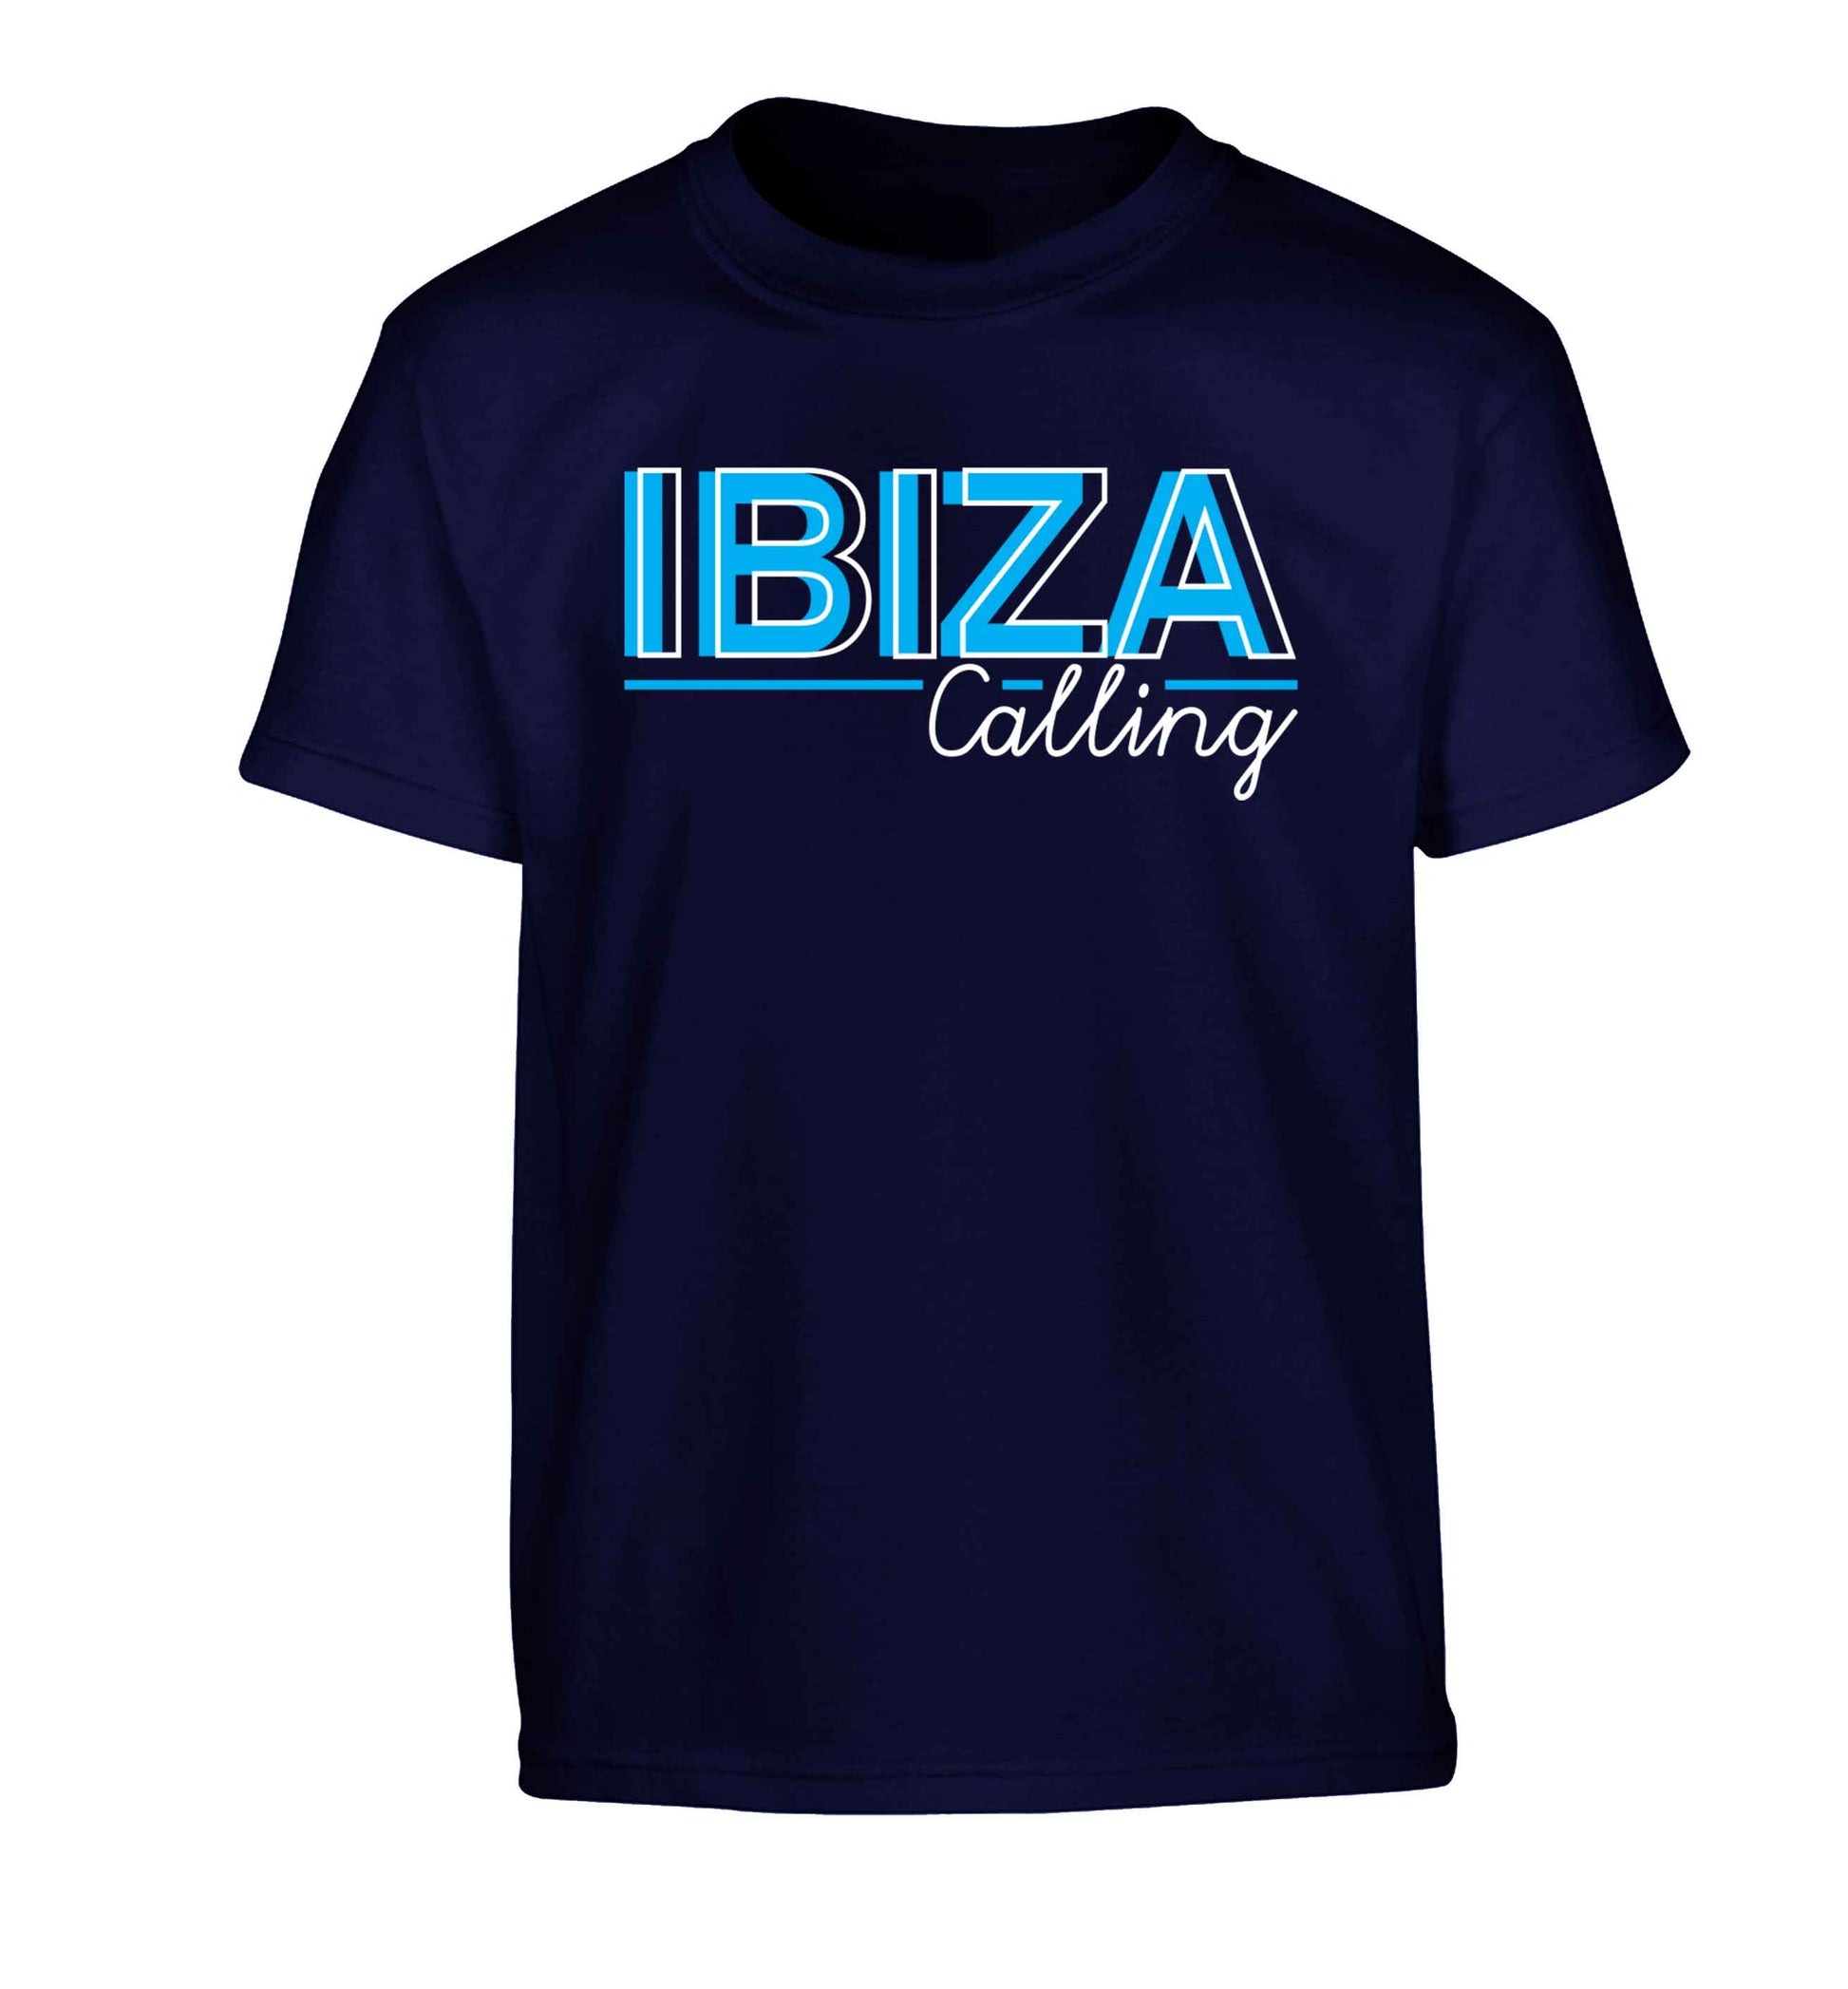 Ibiza calling Children's navy Tshirt 12-13 Years